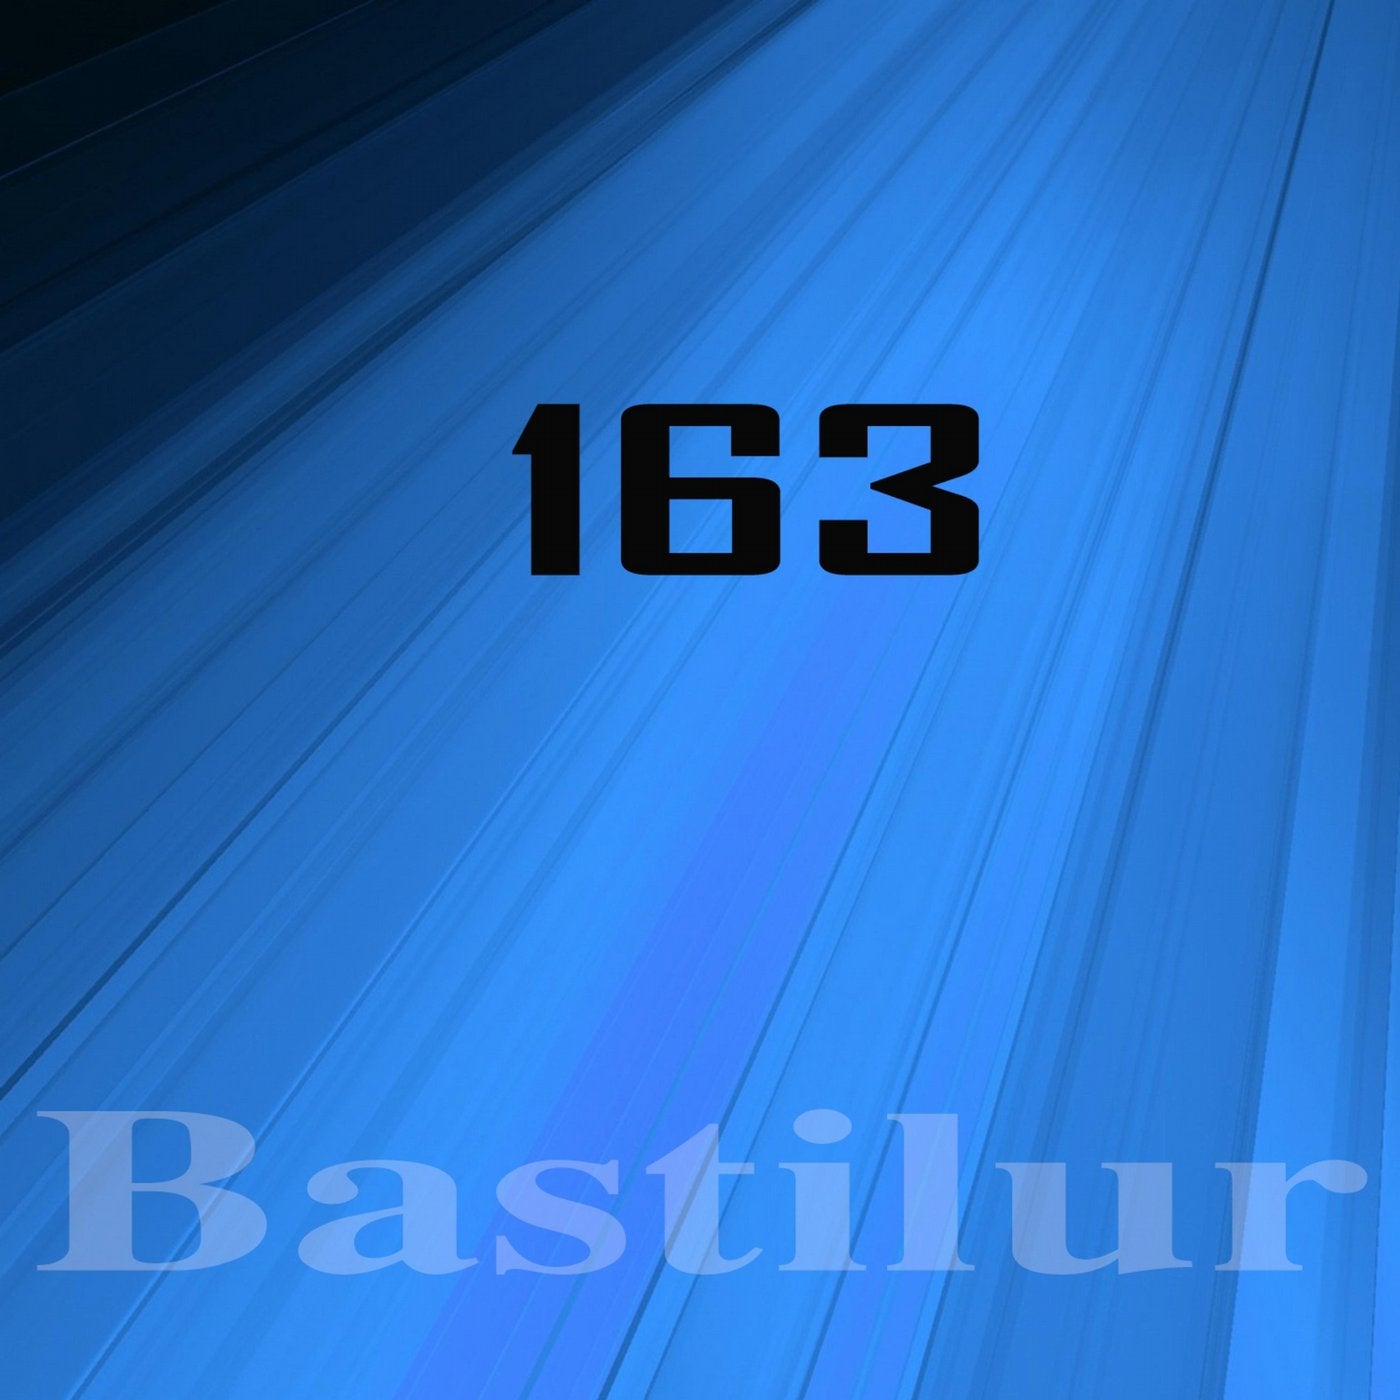 Bastilur, Vol.163